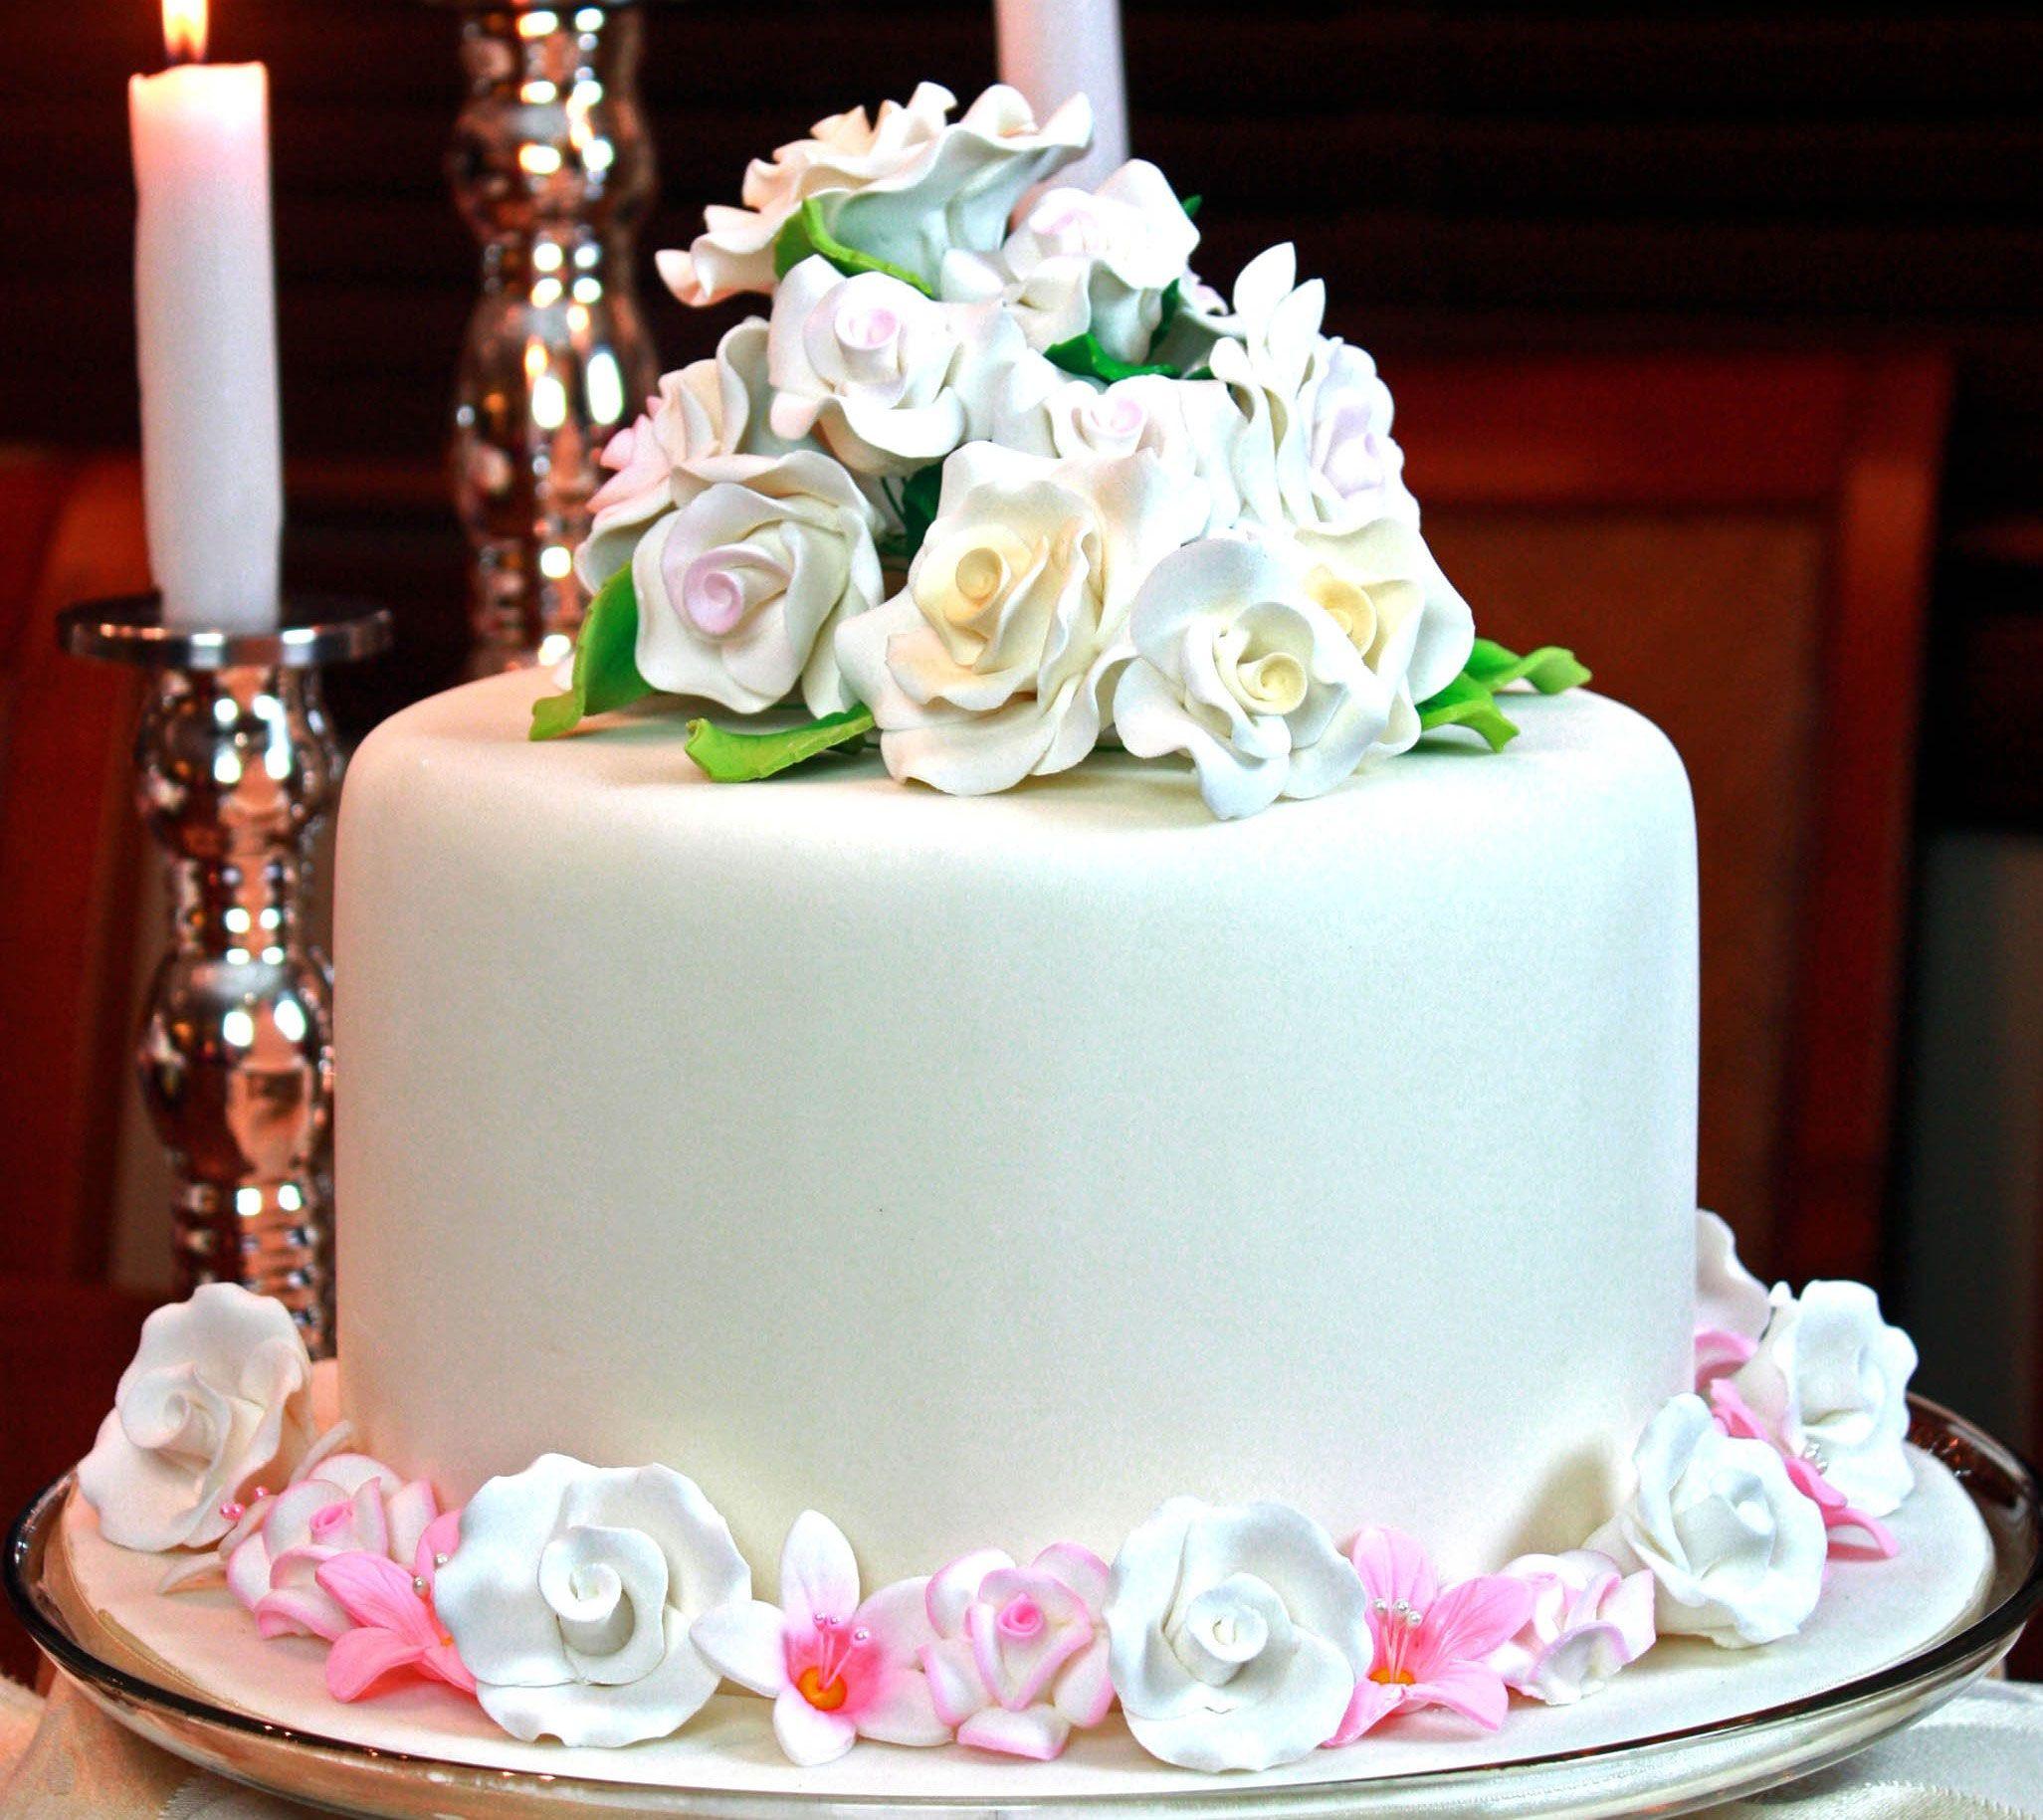  Happybirthdaycakepic Com Online Happy Birthday Cake